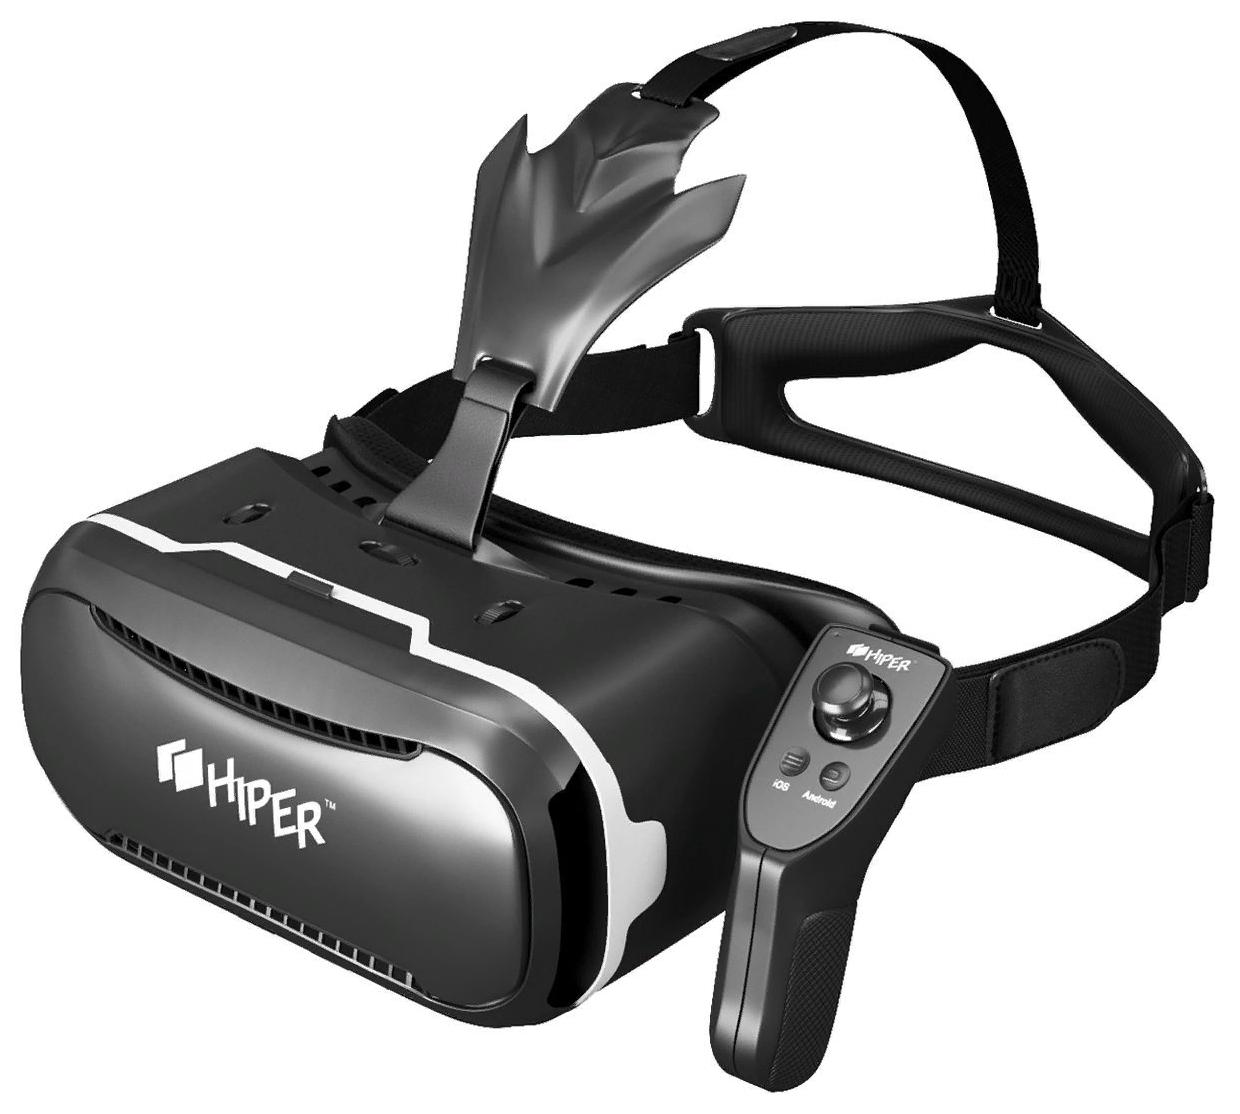 Виар очки реальности. Очки виртуальной реальности Hiper VR. Очки виртуальной реальности Hiper VR Max. Очки виртуальной реальности Hyper VRQ. Виртуальные очки для смартфона Hiper VRQ.